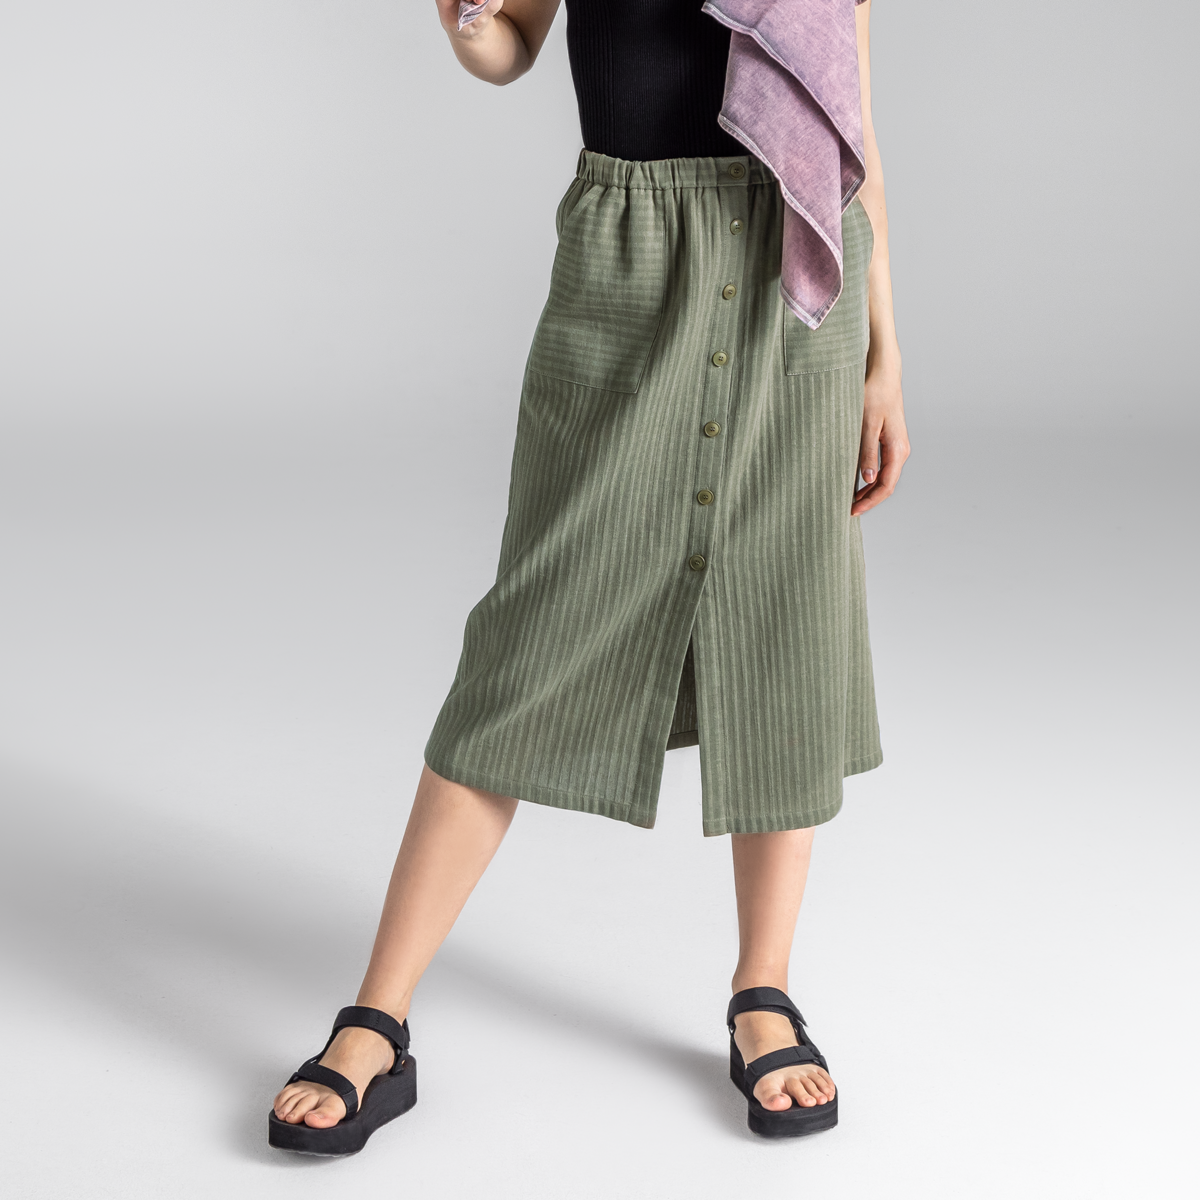 Khaki Women Skirt